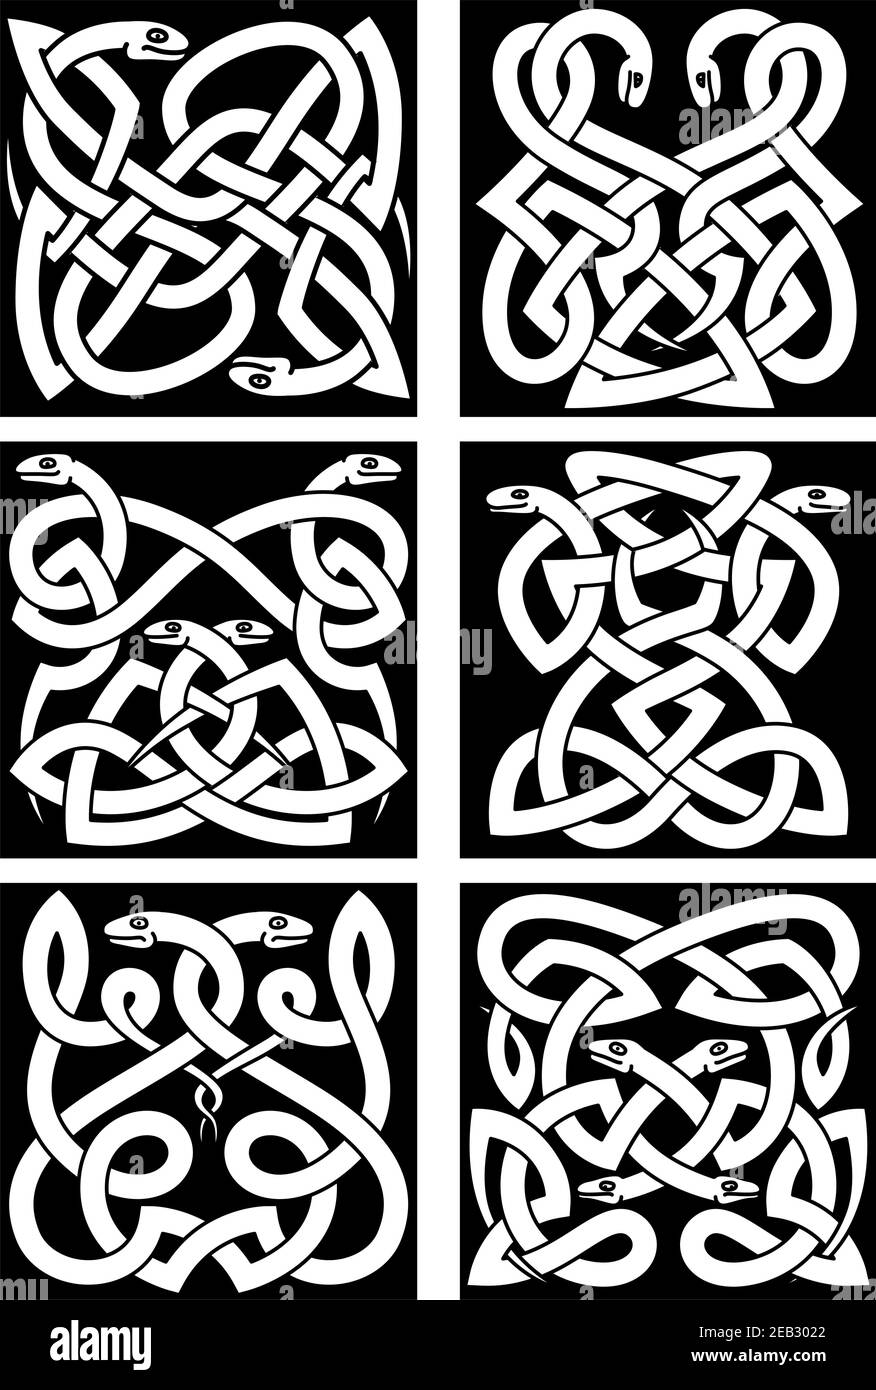 Serpientes celtas patrones de nudo con reptiles entrelazados y ornamento tribal. Elementos de diseño de tatuaje o adorno medieval Ilustración del Vector